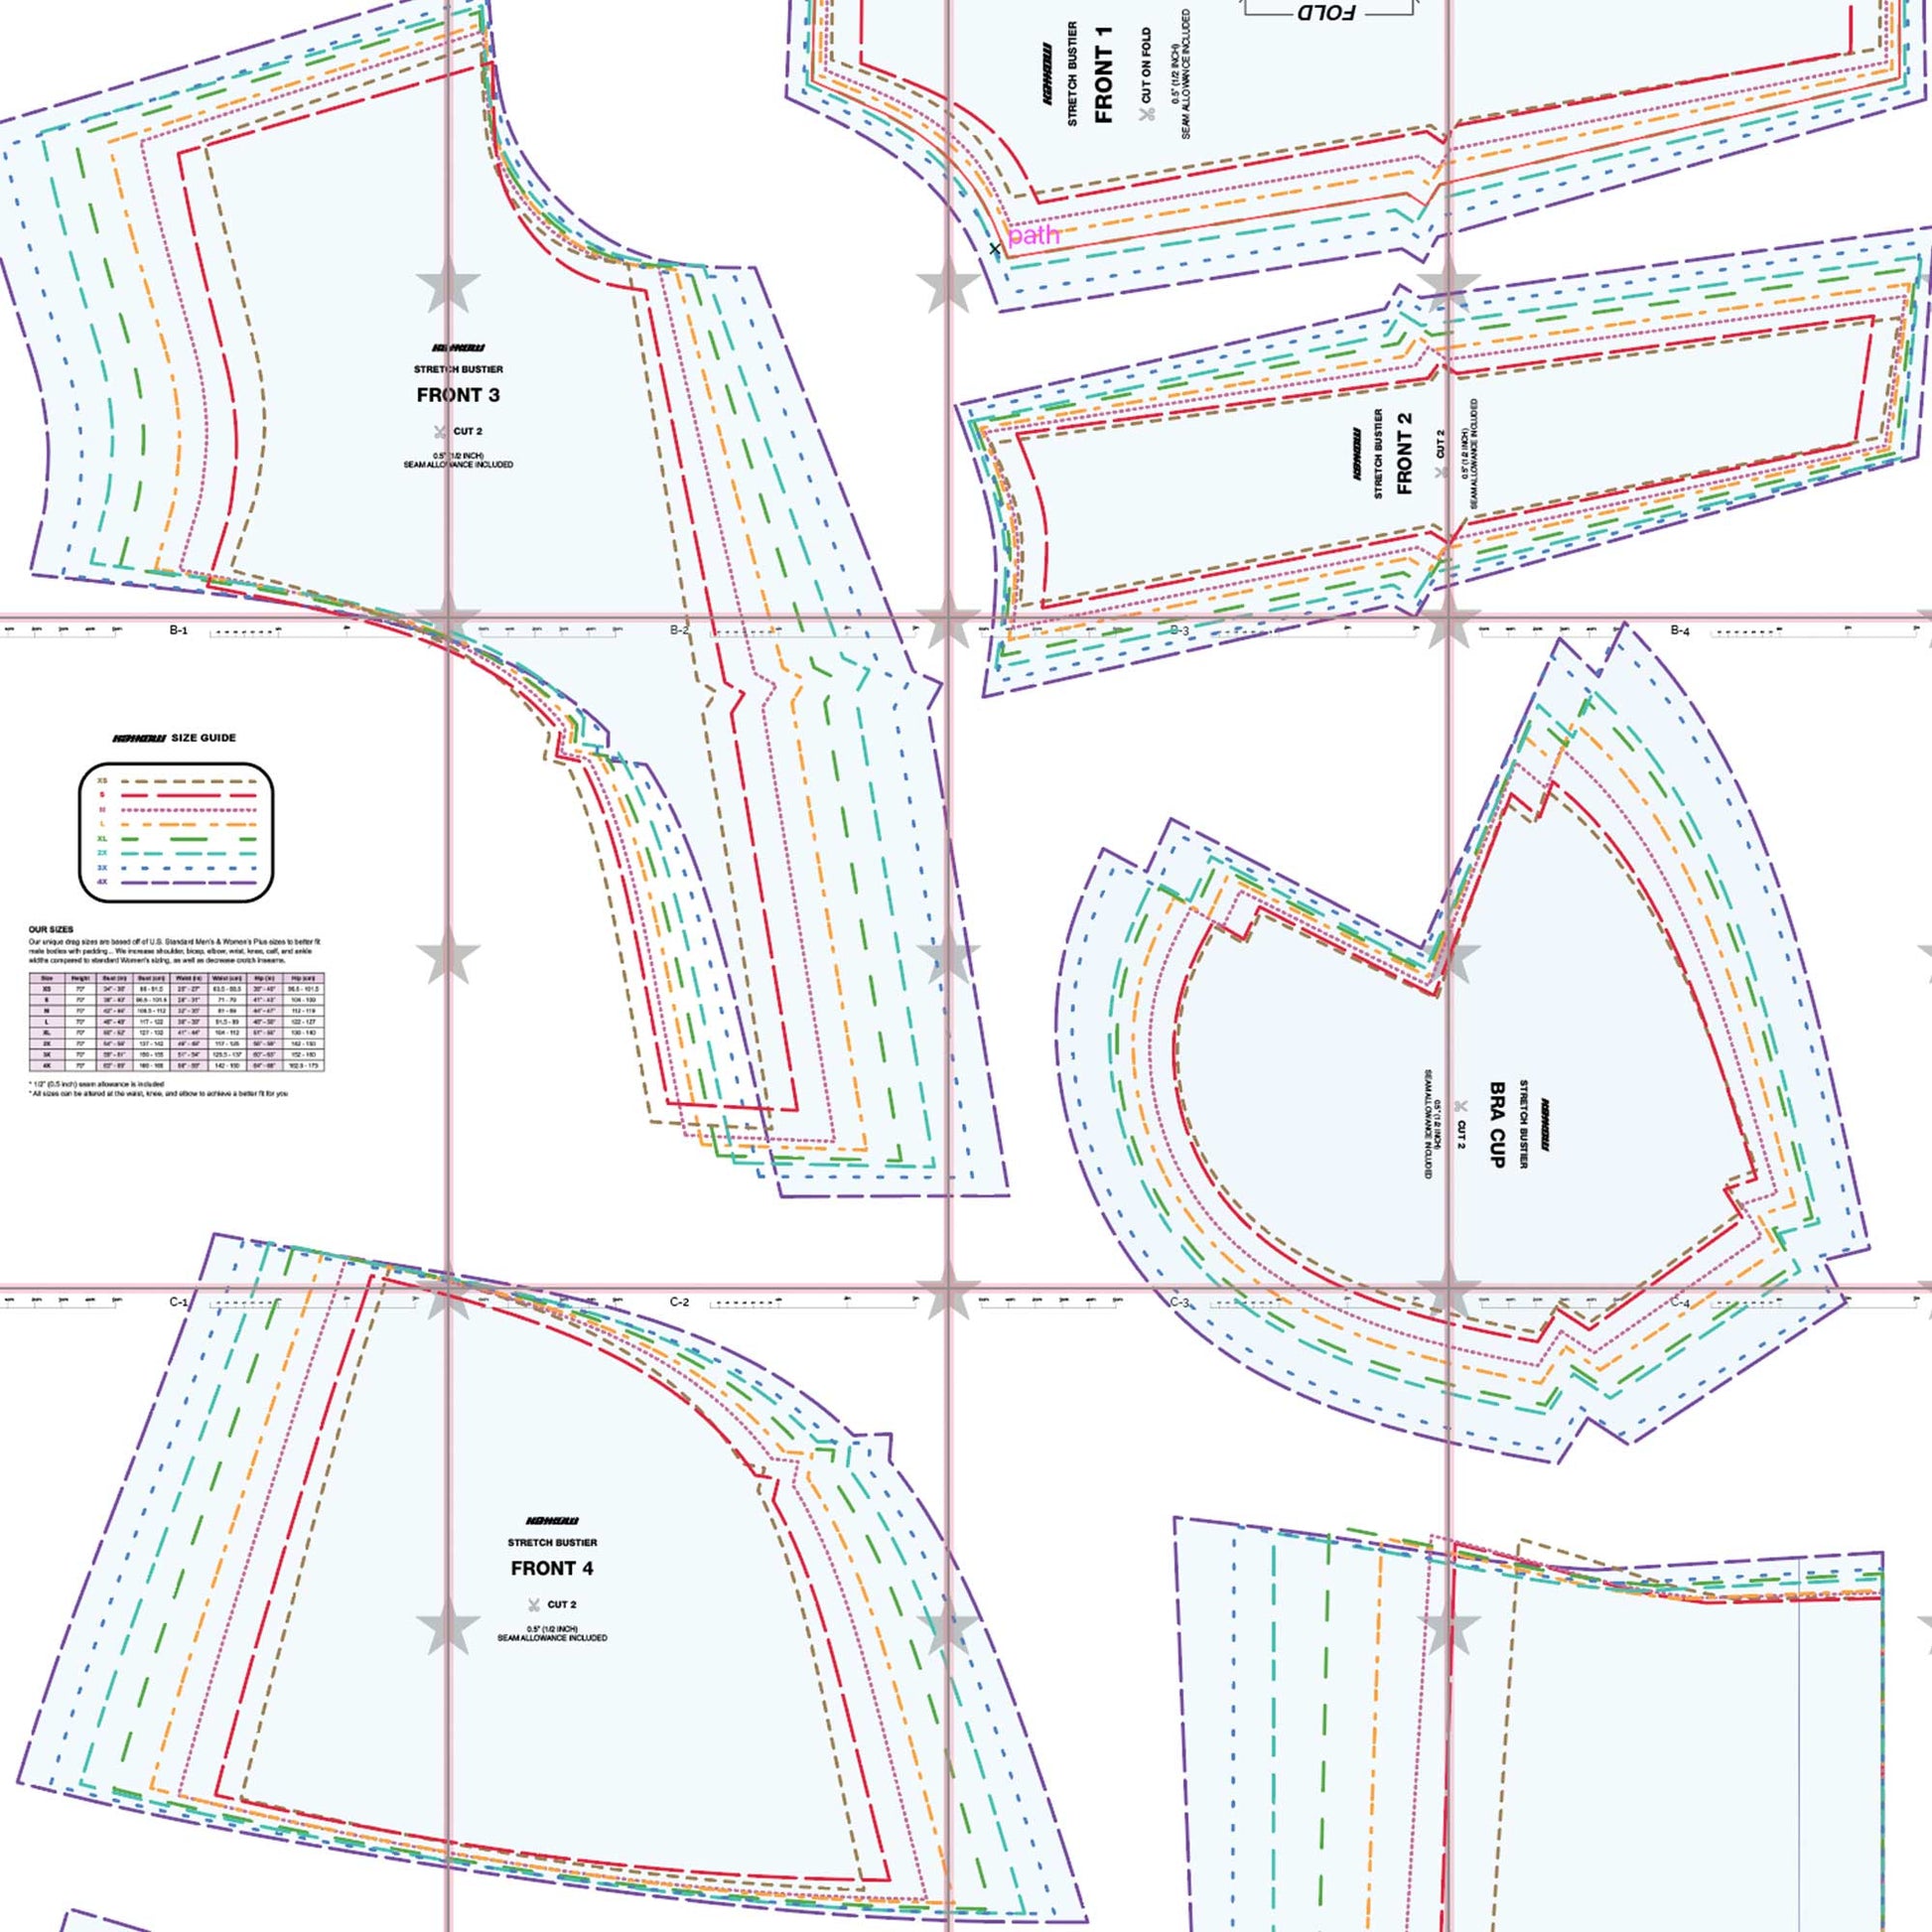 https://www.katkow.net/cdn/shop/products/katkow-stretch-bustier-corset-sewing-pattern-drag-queen-layout.jpg?v=1681421508&width=1946